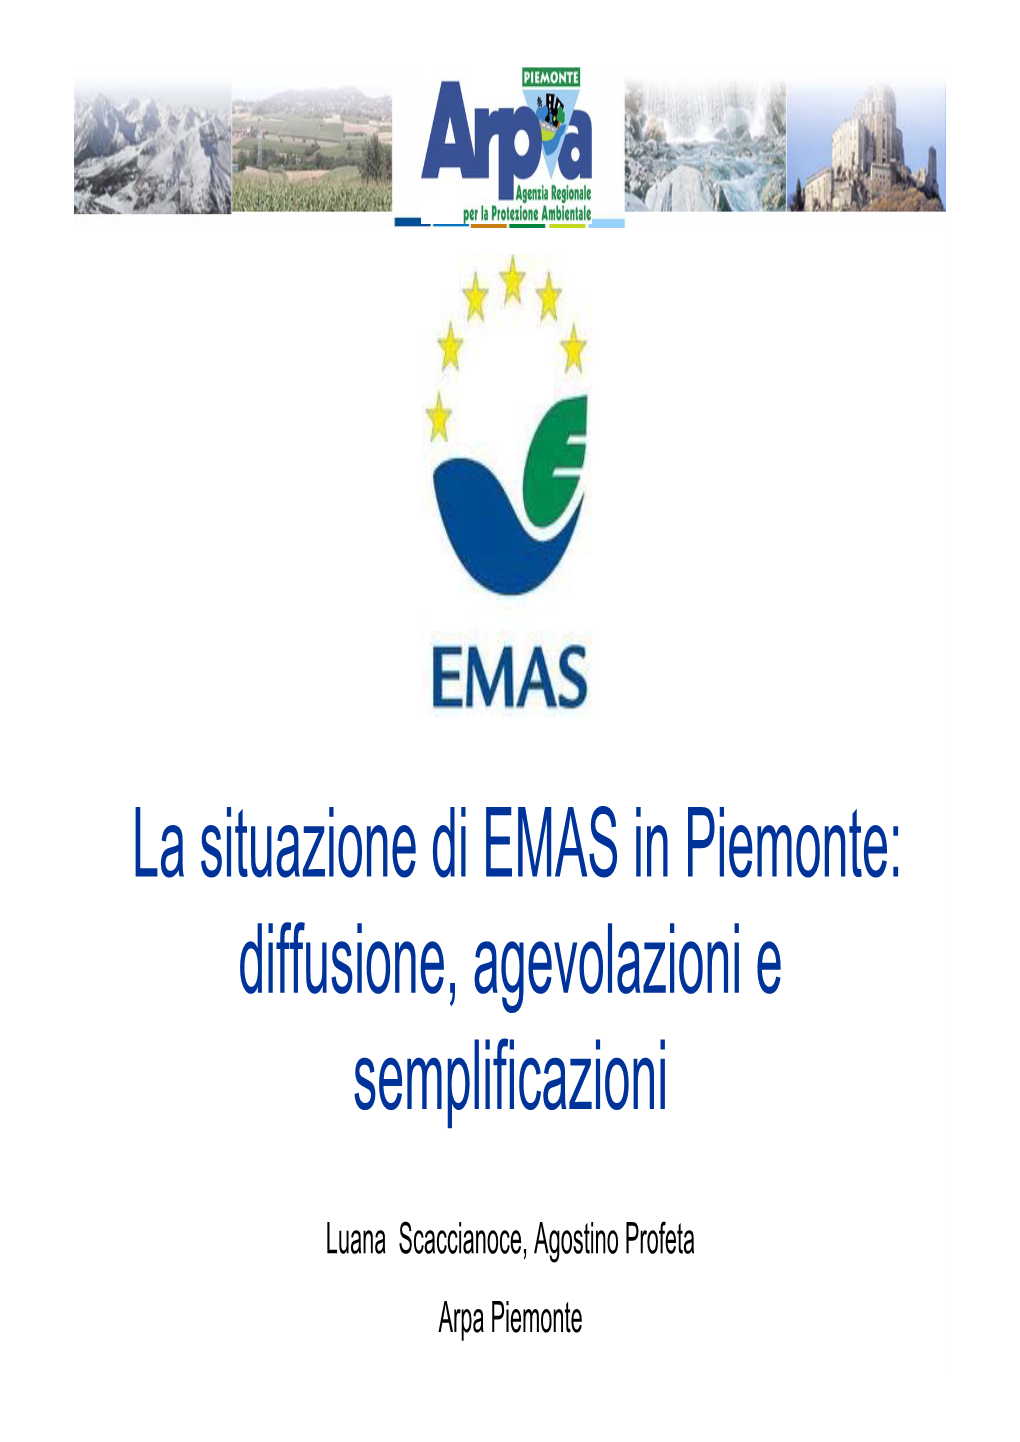 La Situazione Di EMAS in Piemonte: Diffusione, Agevolazioni E Semplificazioni